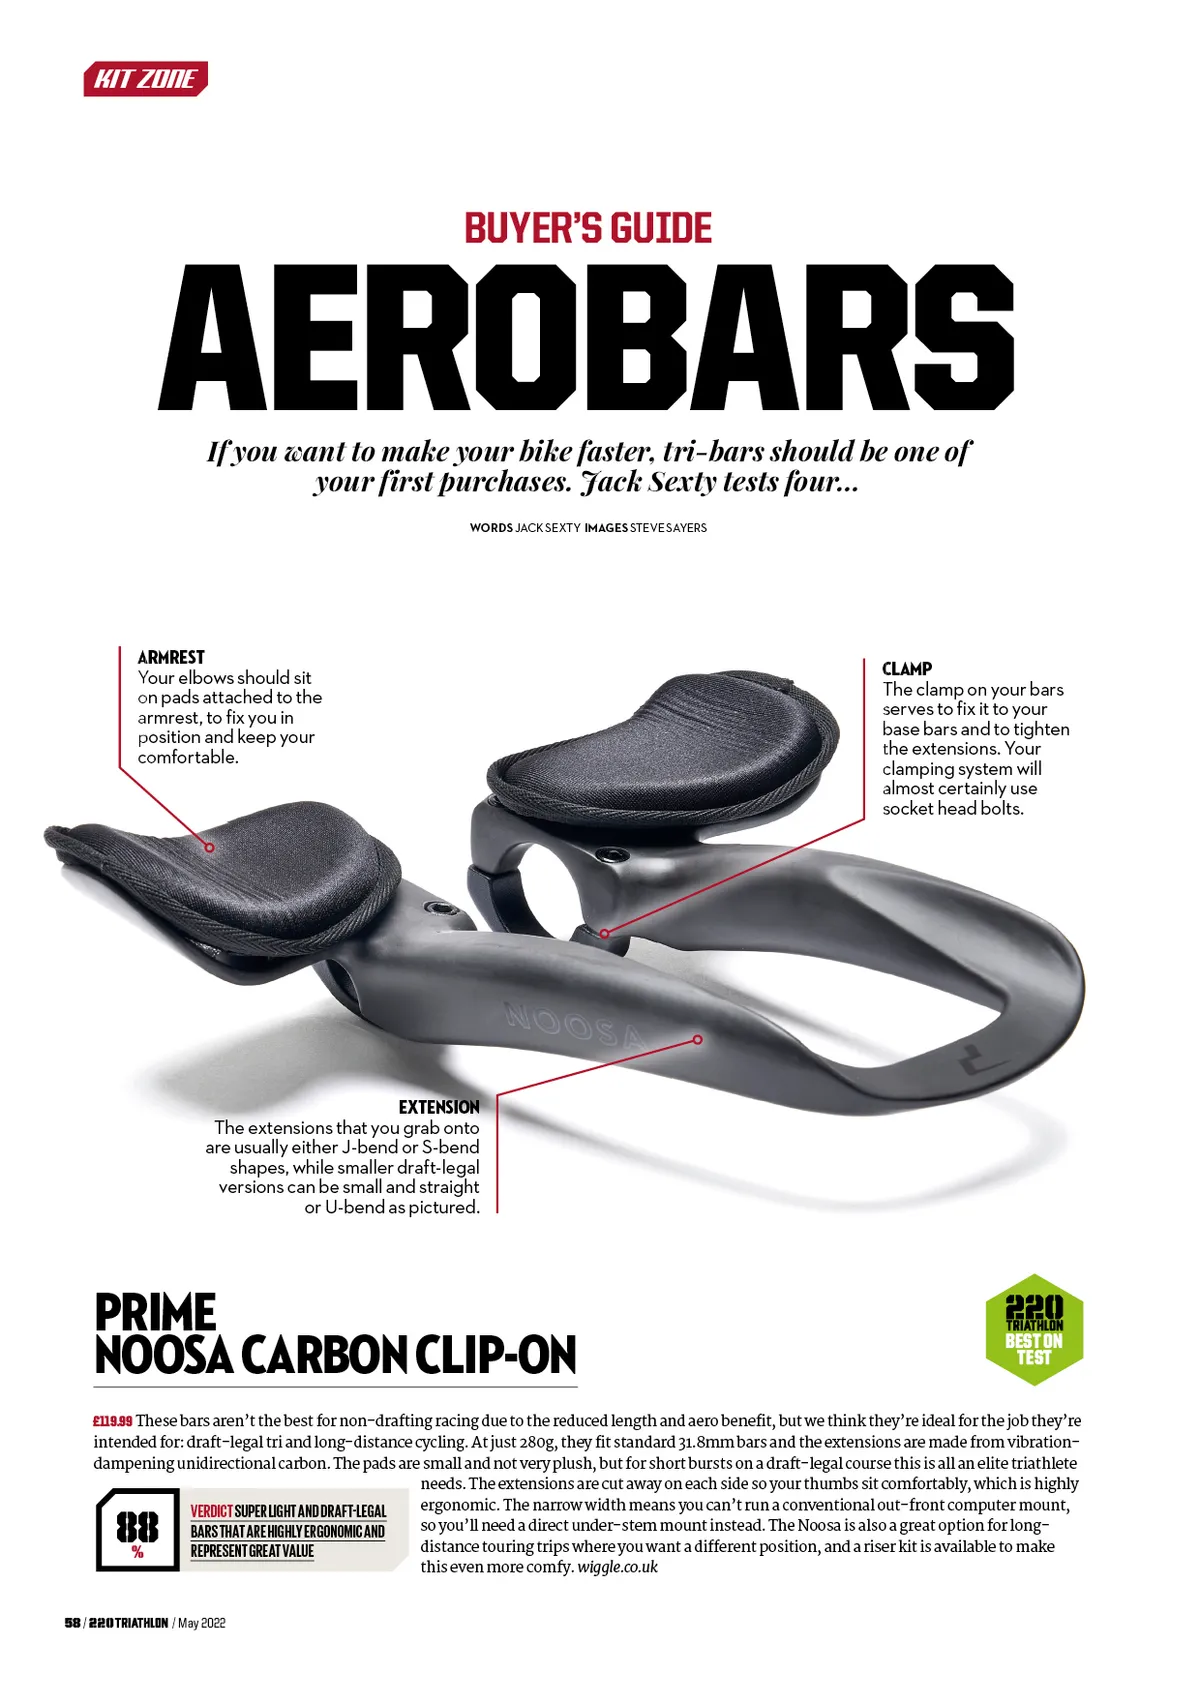 Aerobars reviews article